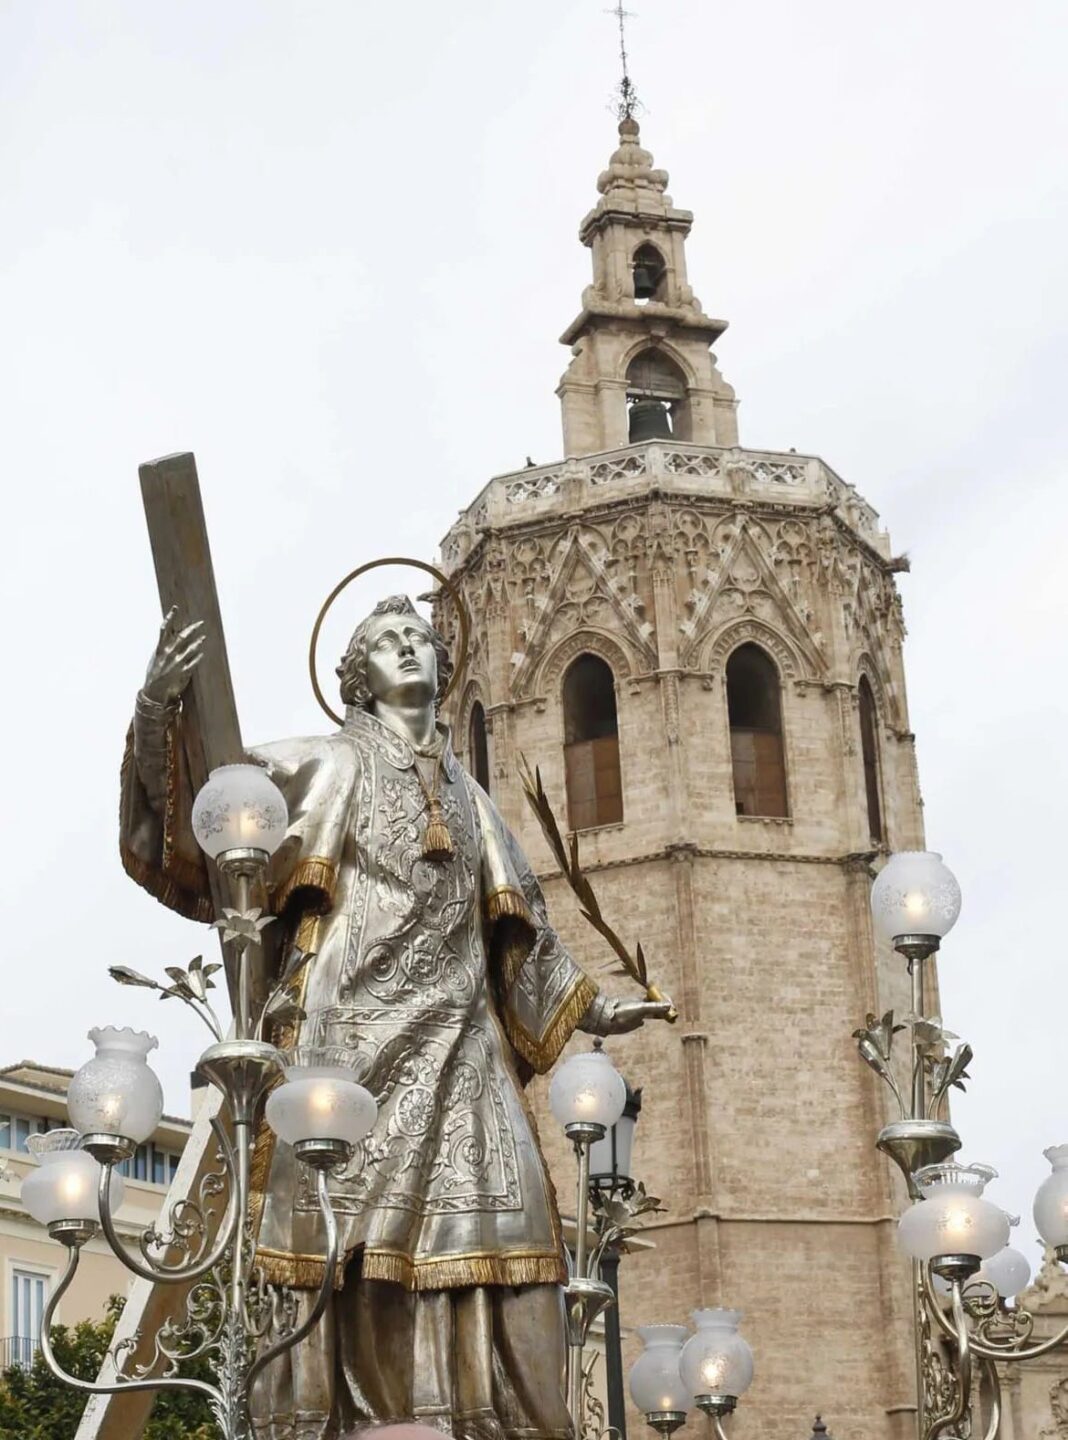 Hoy se celebra San Vicente, fiesta del Cap i Casal, mártir, y santo.